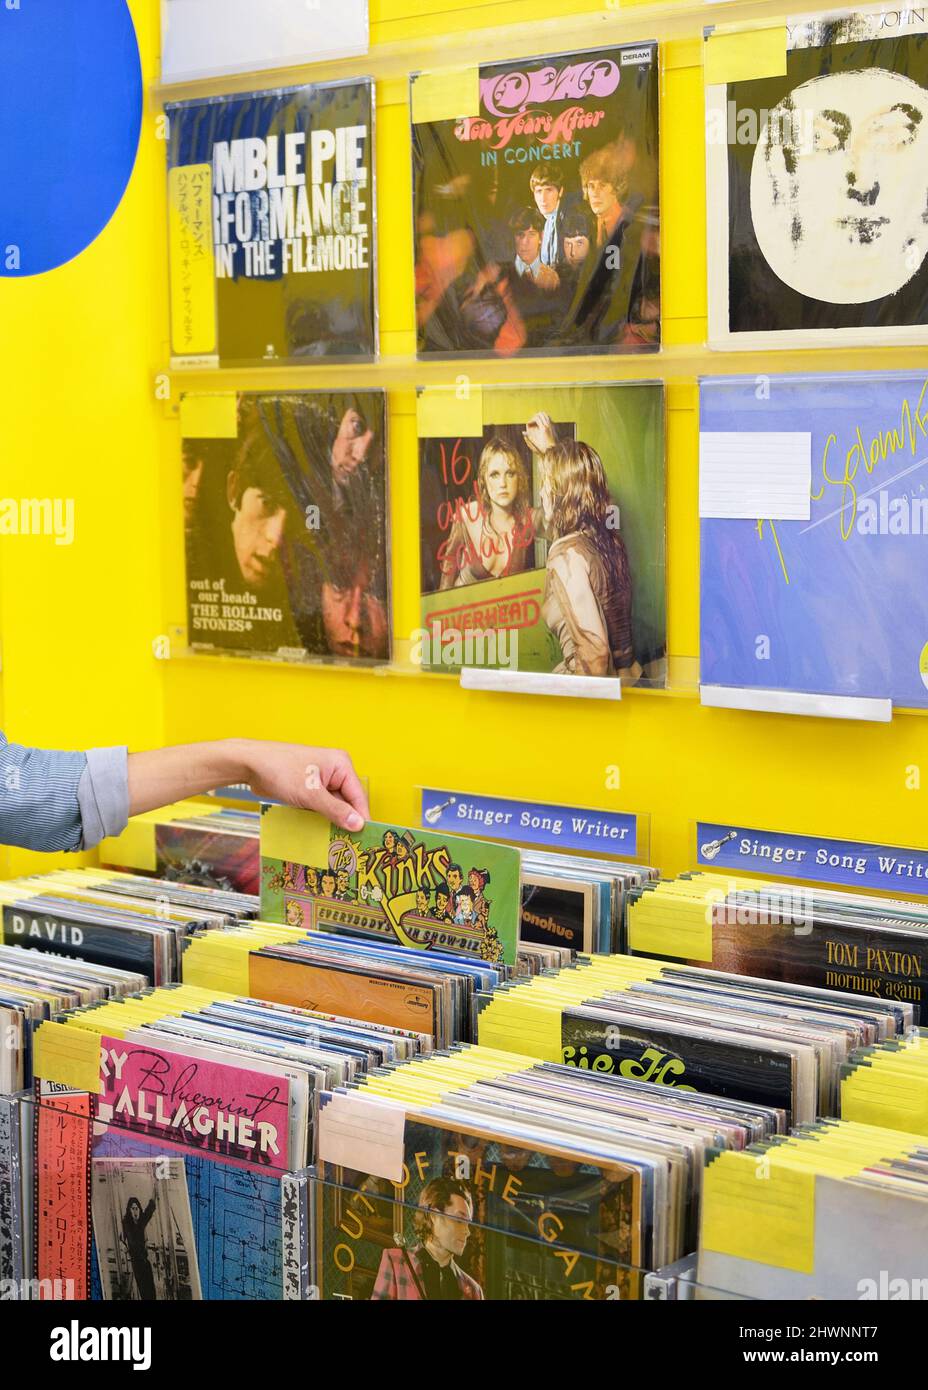 À l'intérieur d'un magasin de disques, des albums en vinyle sont exposés. Banque D'Images